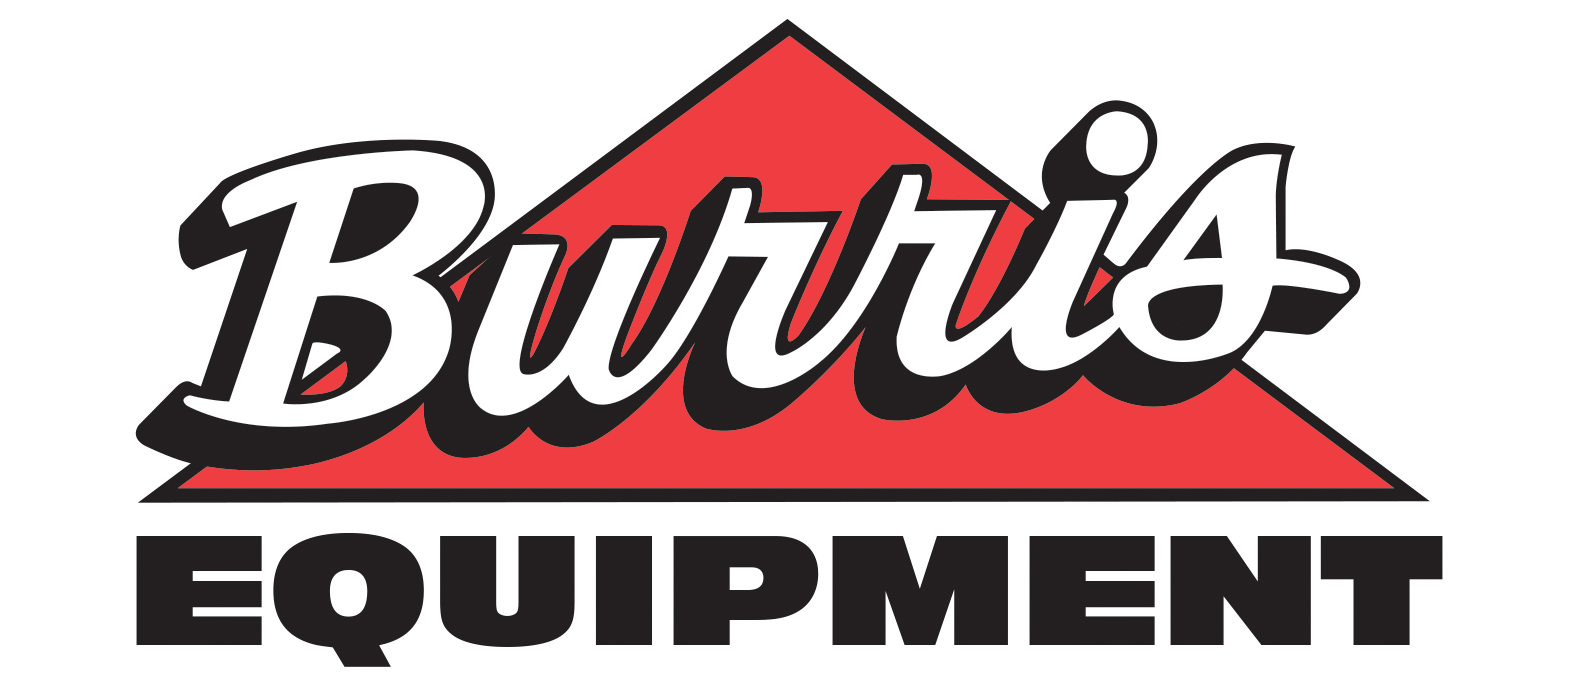 Company logo for 'Burris Equipment'.